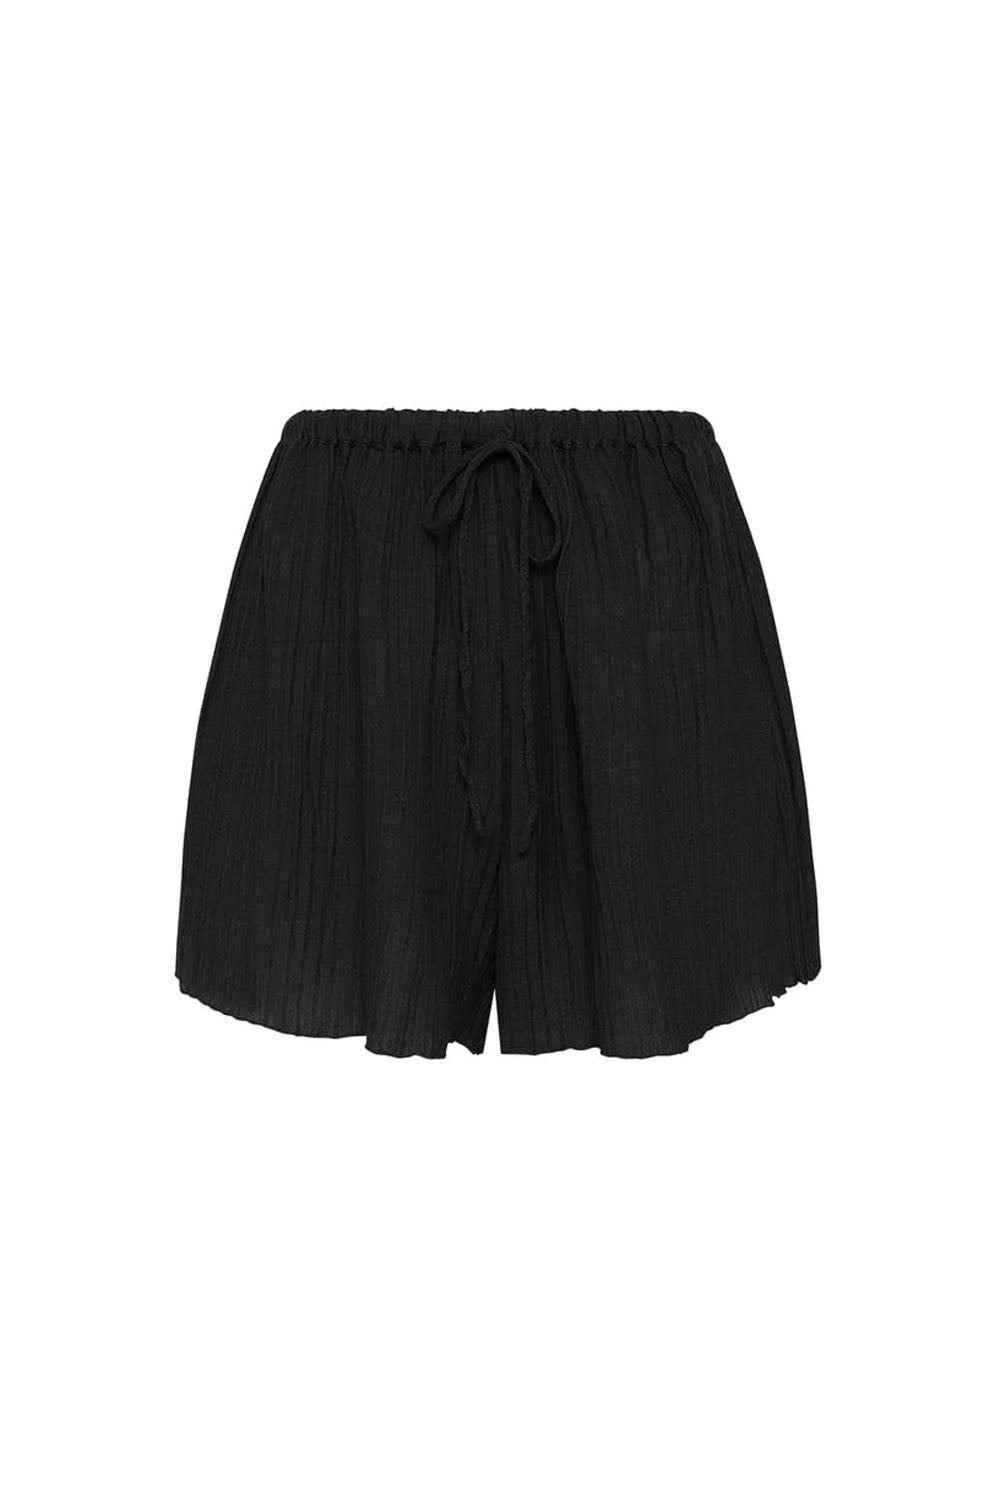 Santa-Ana-shorts-black